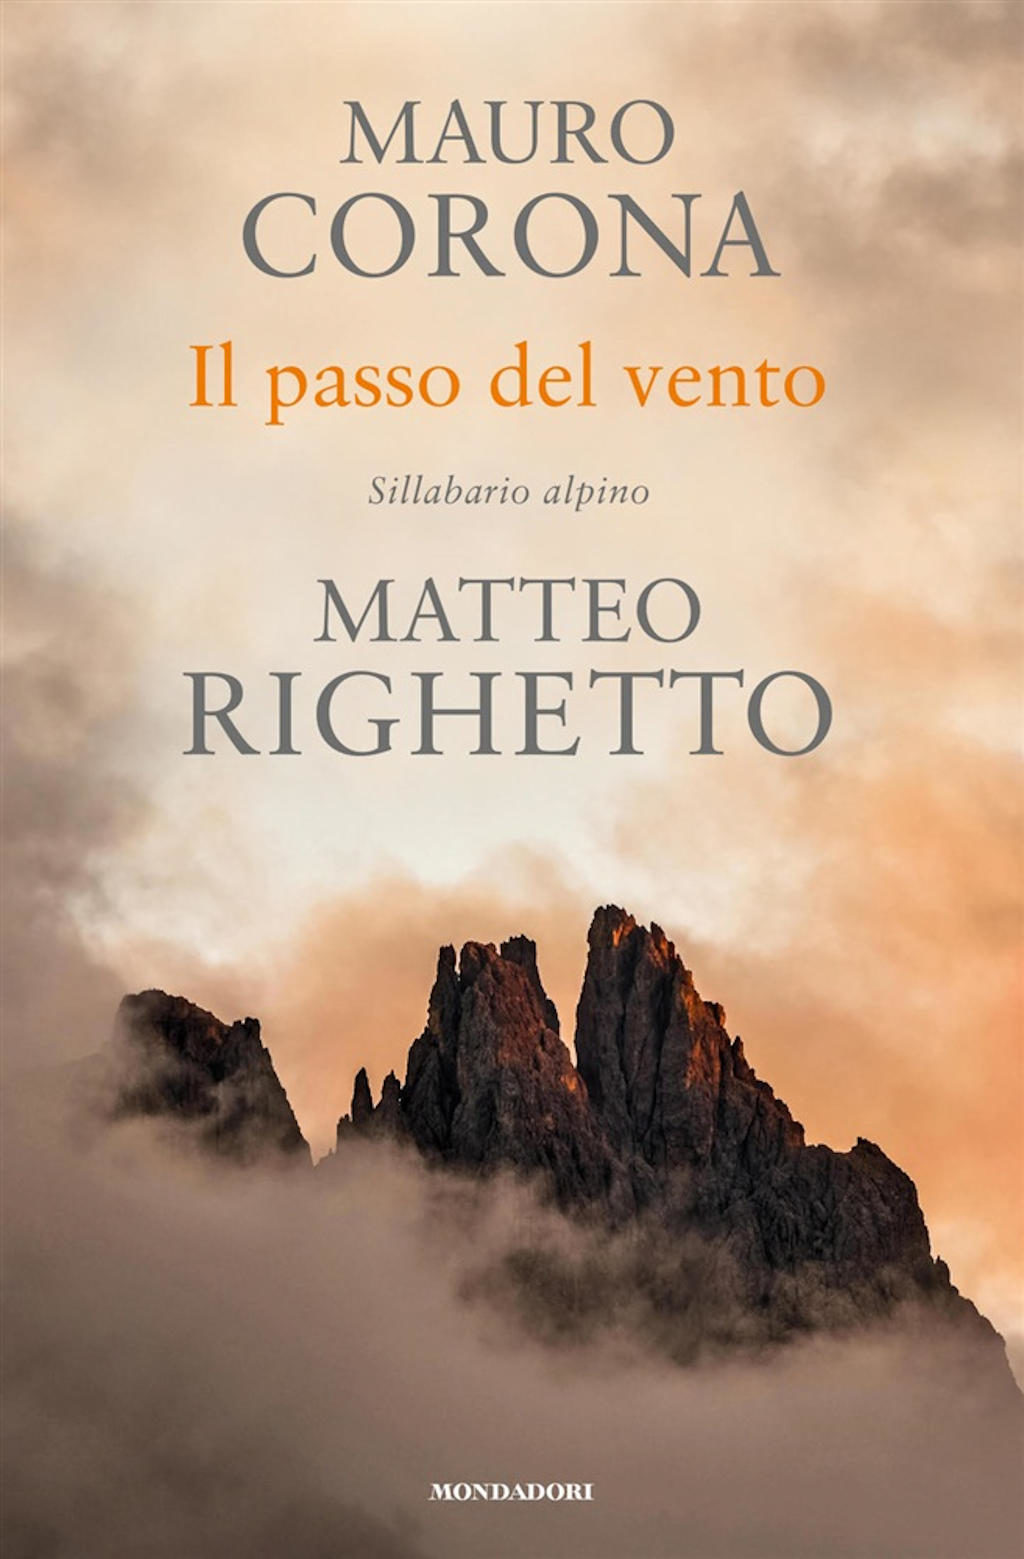 Il passo del vento, sillabario alpino di Mauro Corona e Matteo Righetto